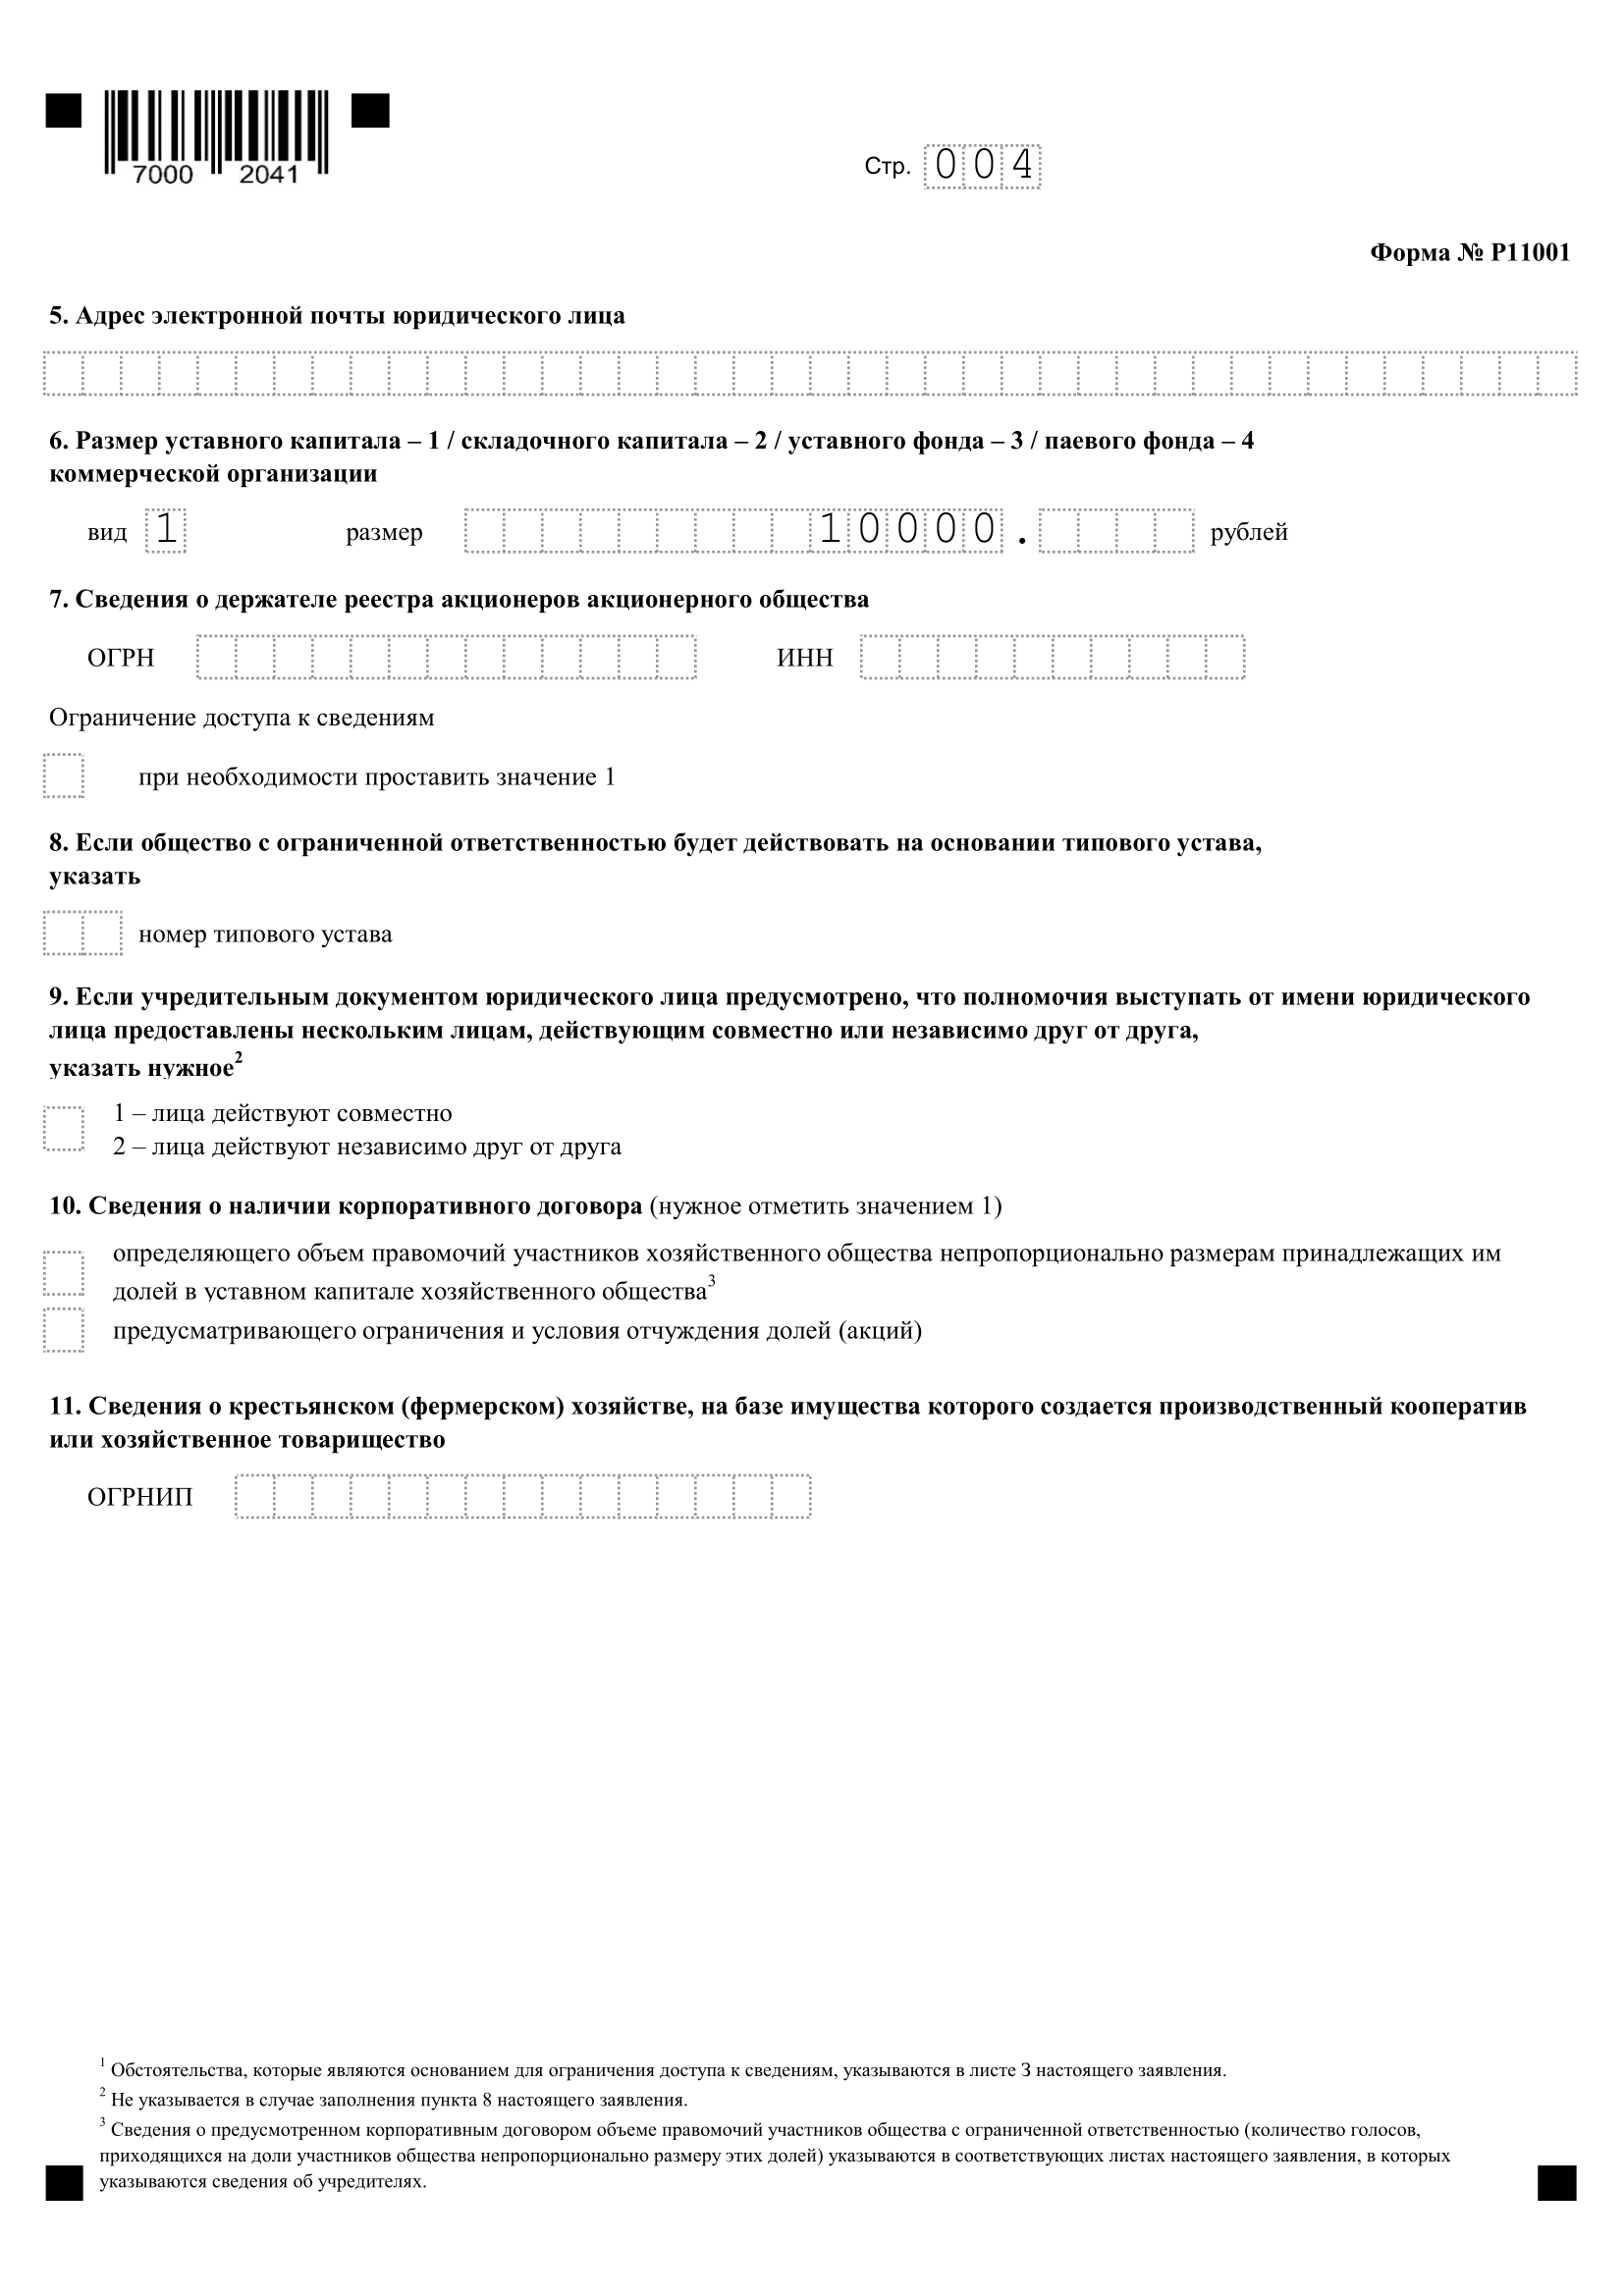 форма р11001 образец заполнения с одним учредителем, страница 4